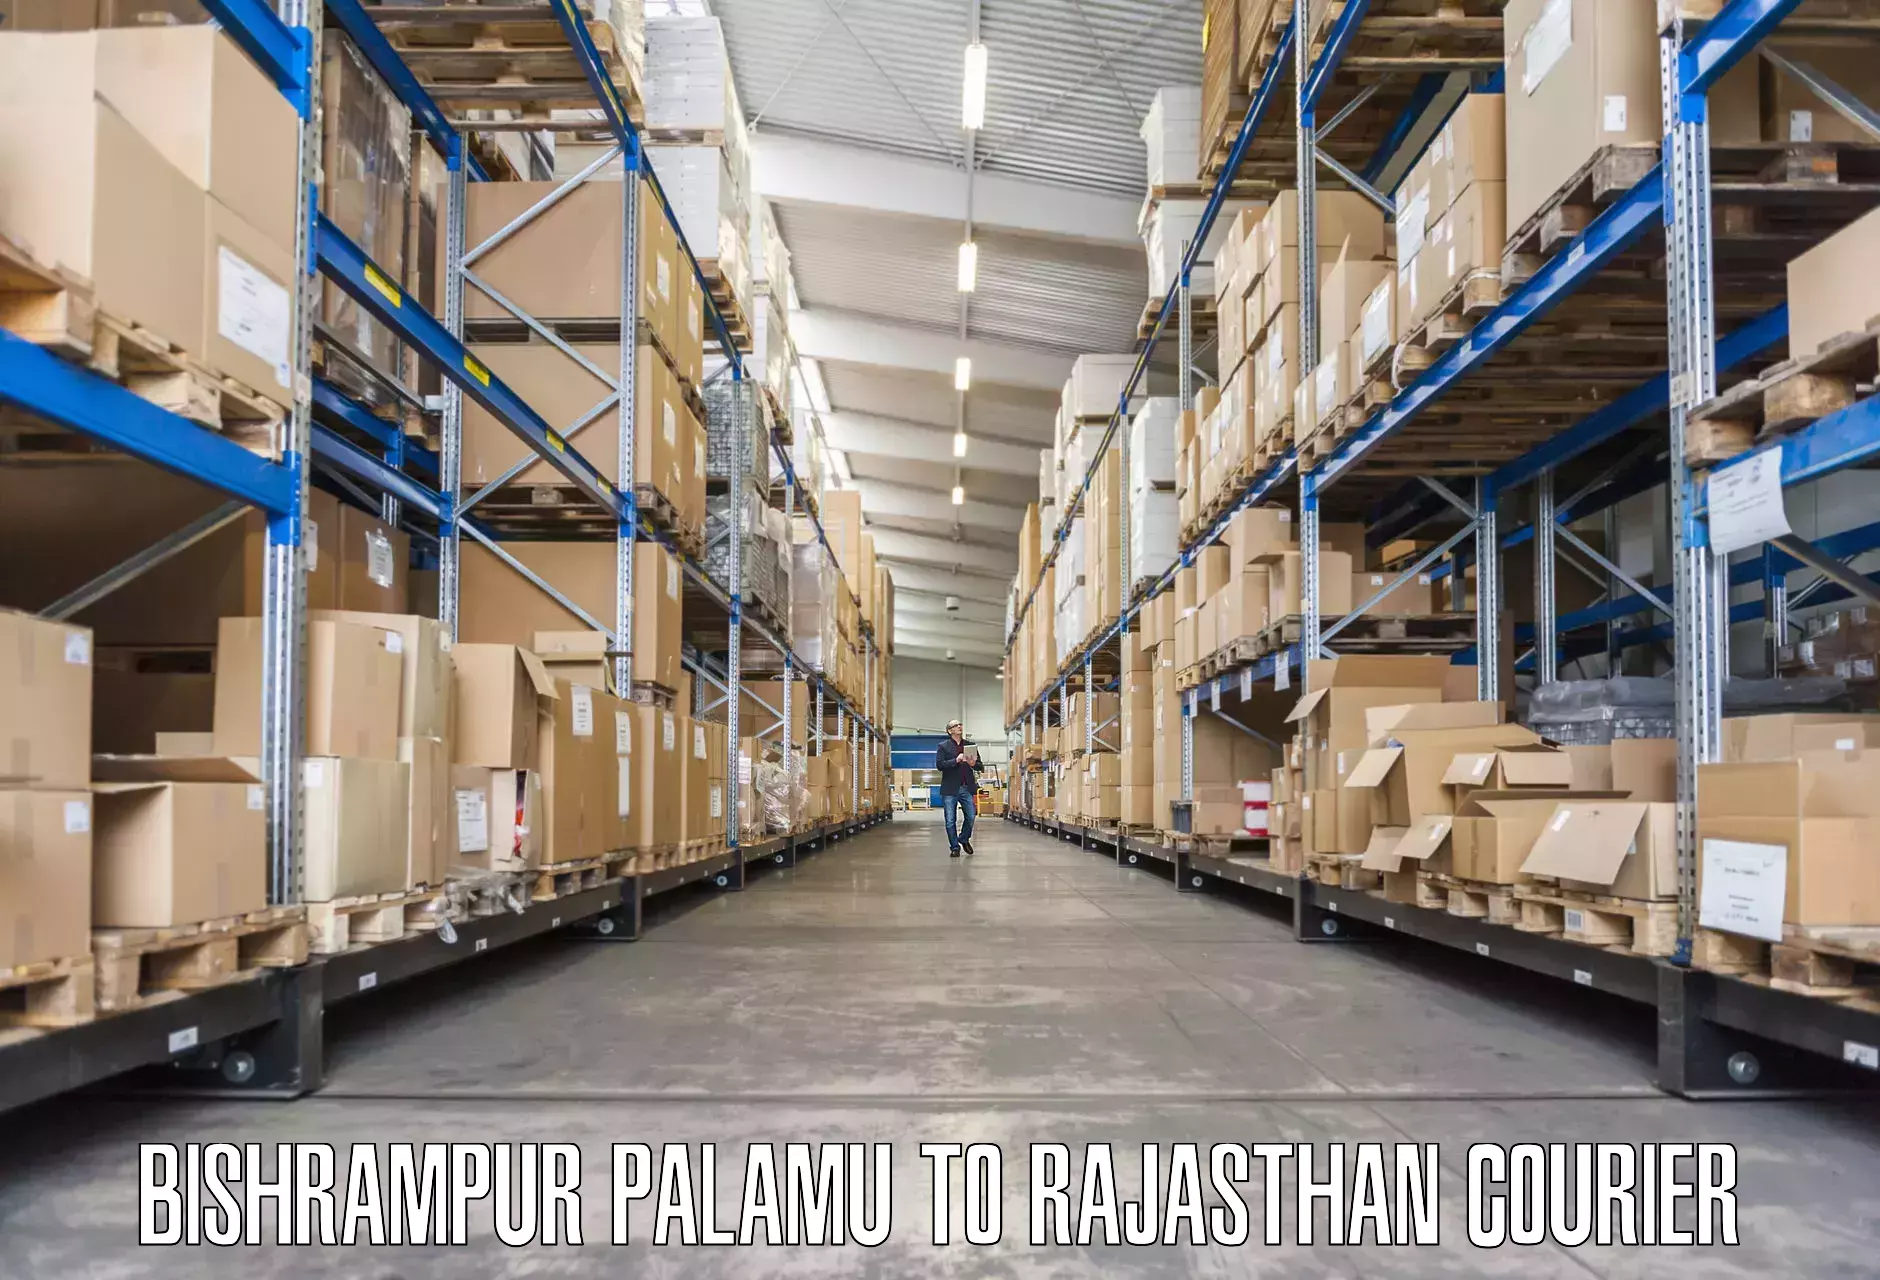 Professional relocation services Bishrampur Palamu to Kapasan